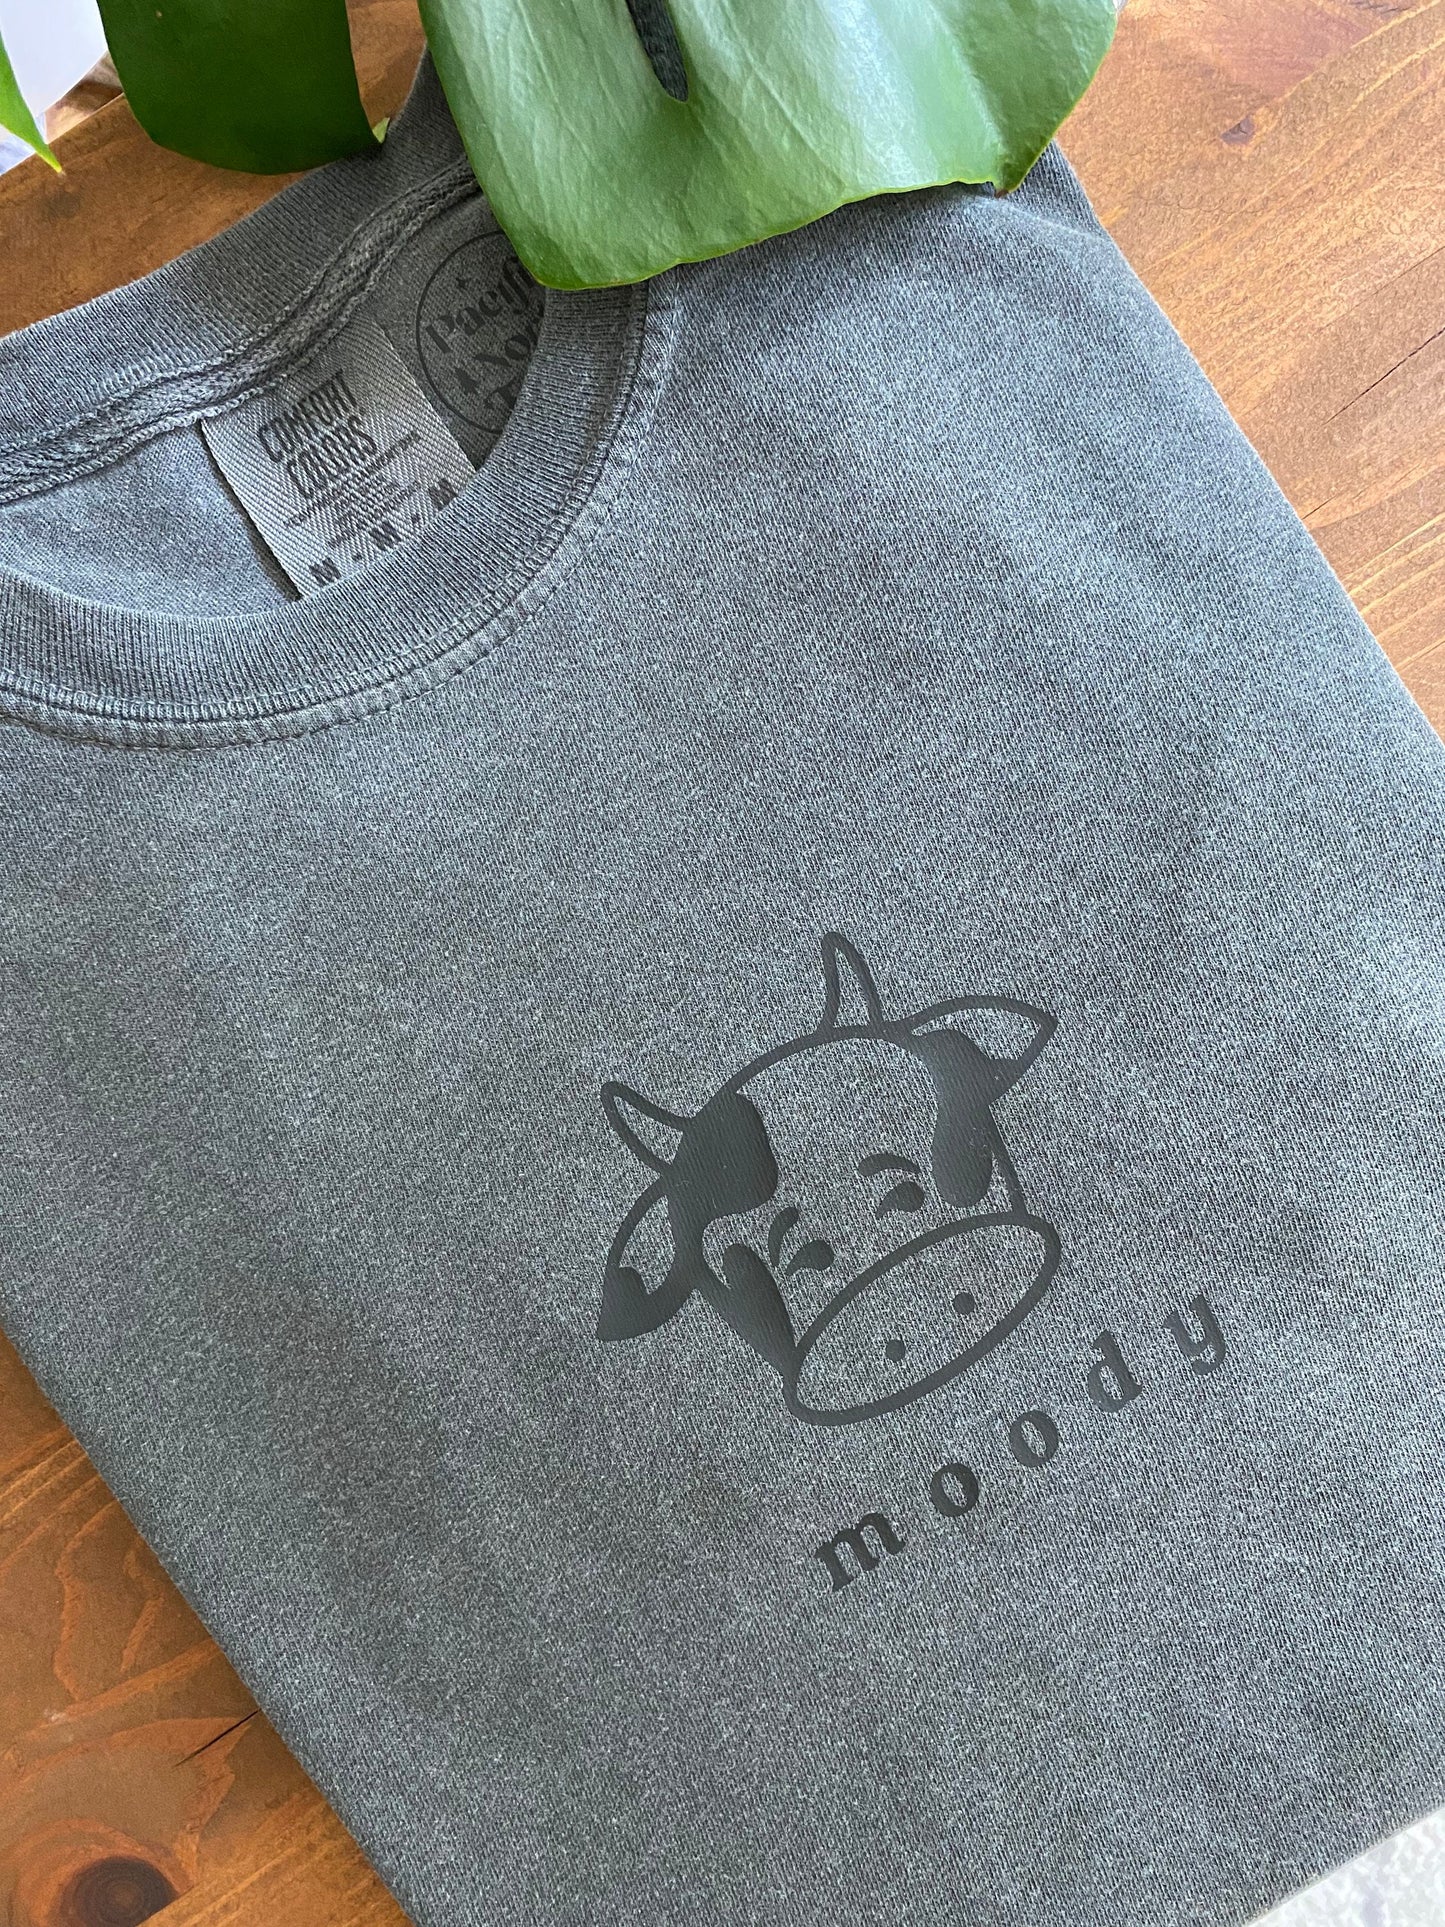 Moody Cow TShirt